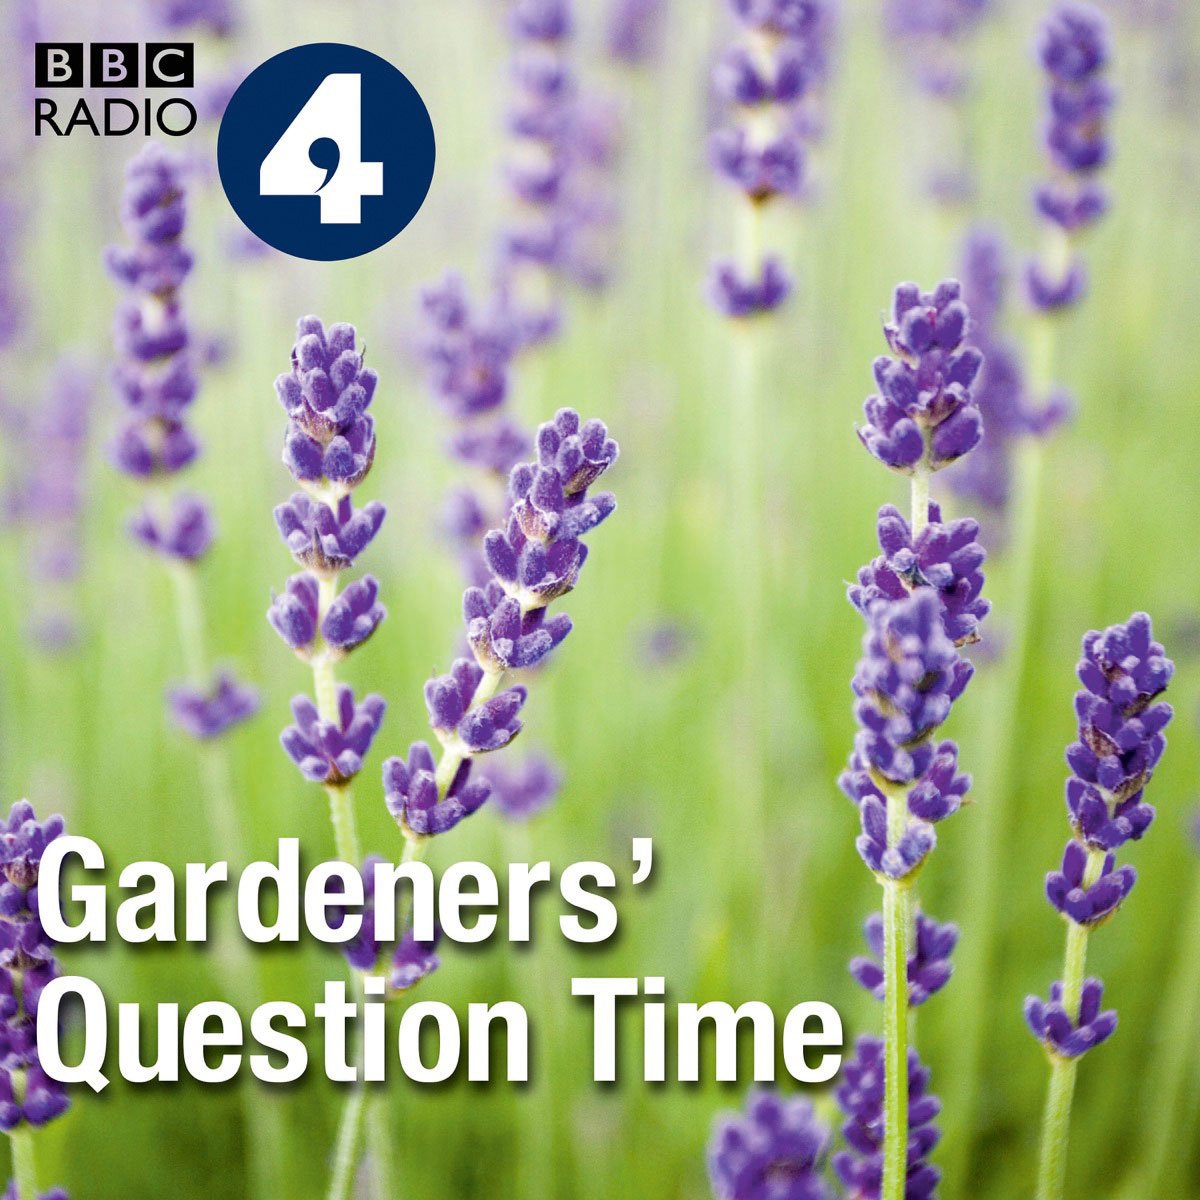 Gardeners’ Question Time: Wie man Radio macht, weiß man bei der BBC. Wie man Podcasts macht auch. Informativ und kurzweilig mit Call-in-Elementen versehen, bleiben hier zum Thema Garten- und Pflanzenbetreuung kaum Fragen offen. Kleine Ausflüge und Vor-Ort-Reportagen gibt es auch zu hören.